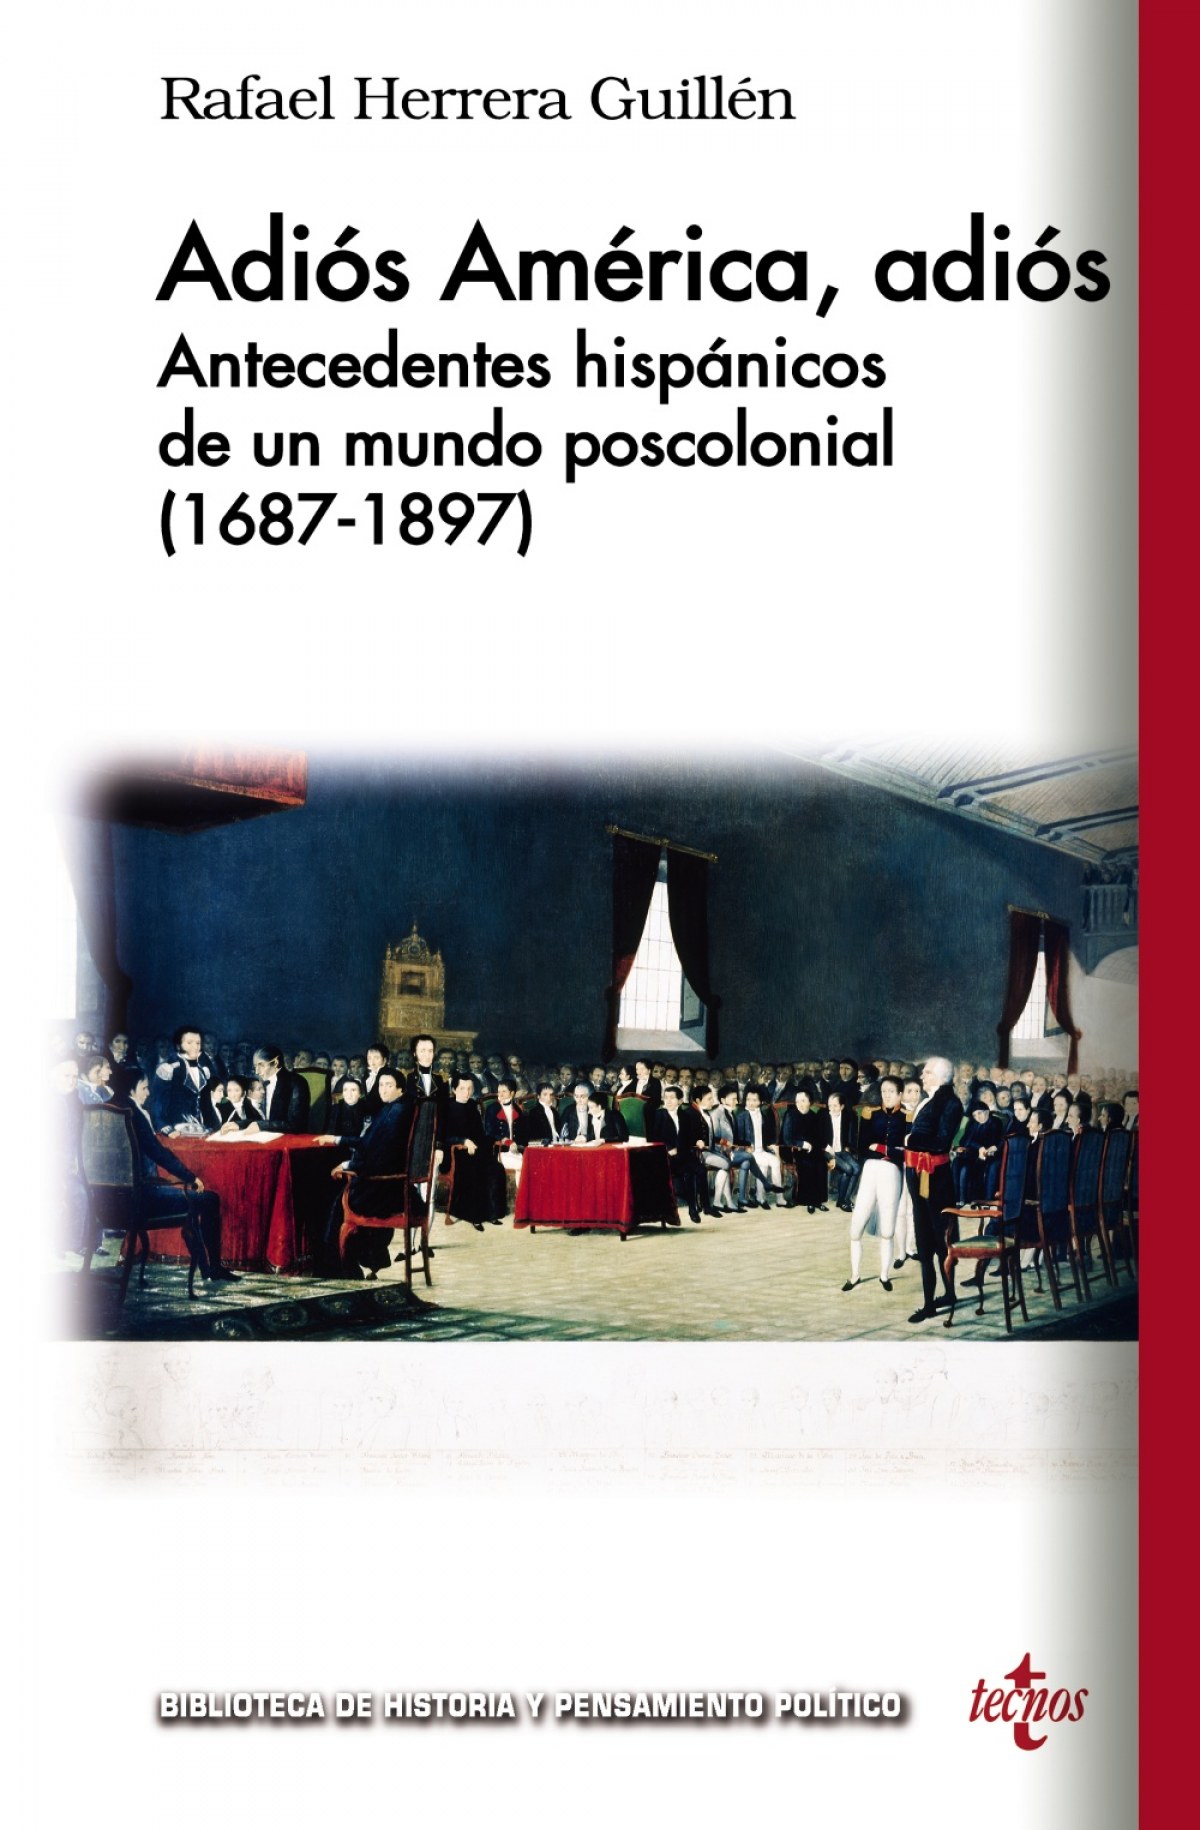 Adiós América, adiós : antecedentes hispánicos de un mundo poscolonial, 1687-1897 (Biblioteca de Historia y Pensamiento Político)